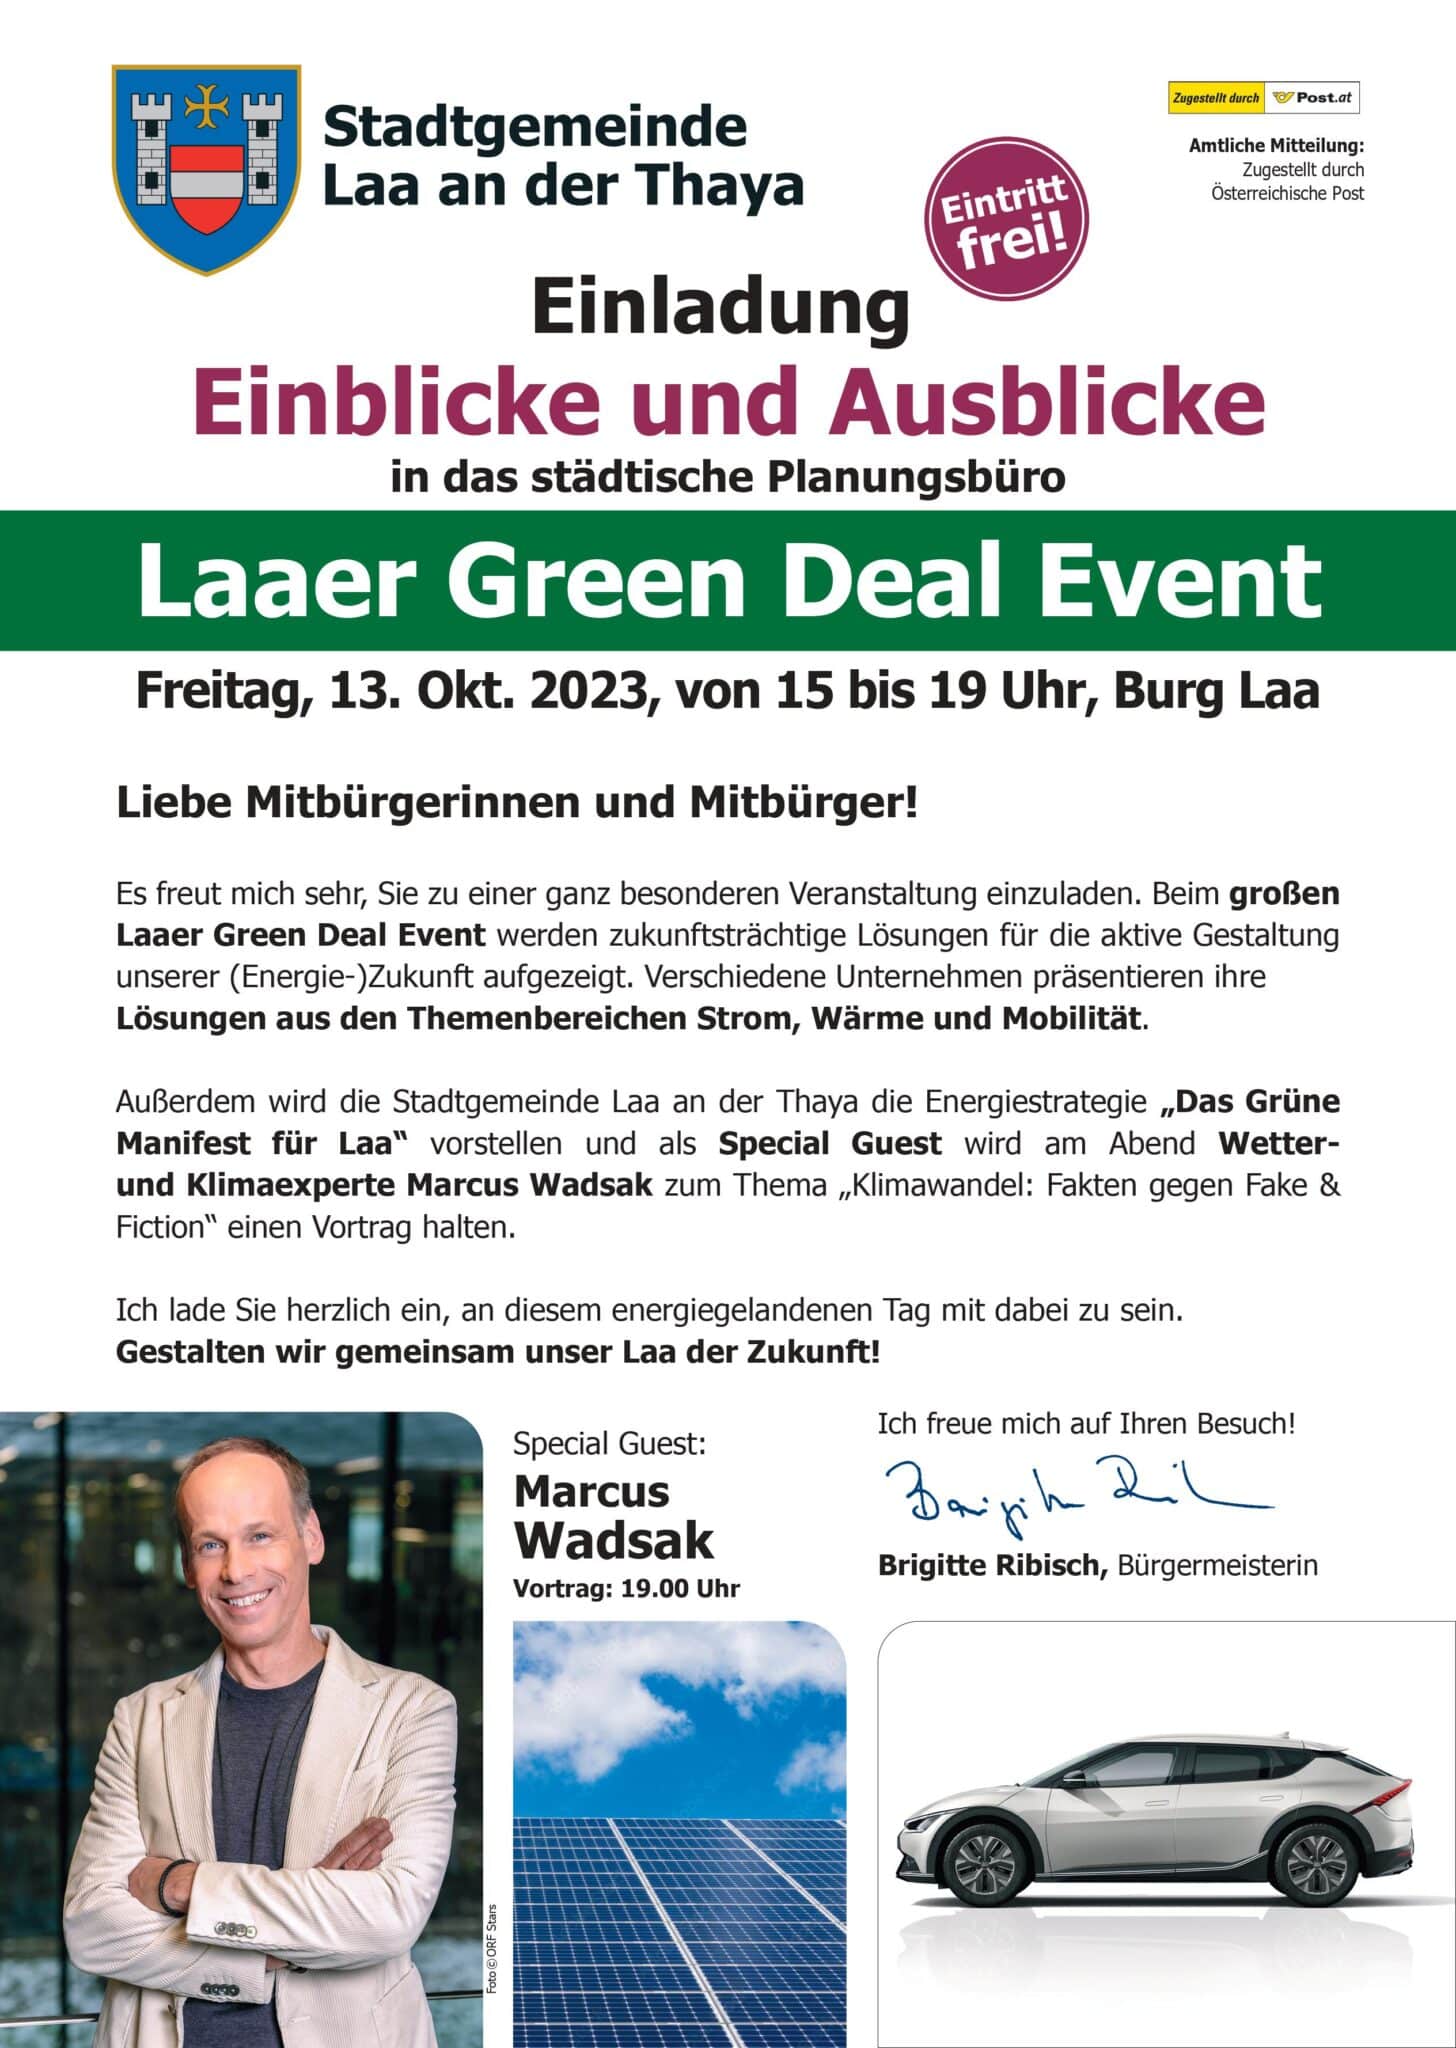 Stadtgemeinde Laa an der Thaya – Green Deal Event | A4 Info Laaer Green Deal Event PRINT FINAL 1 scaled